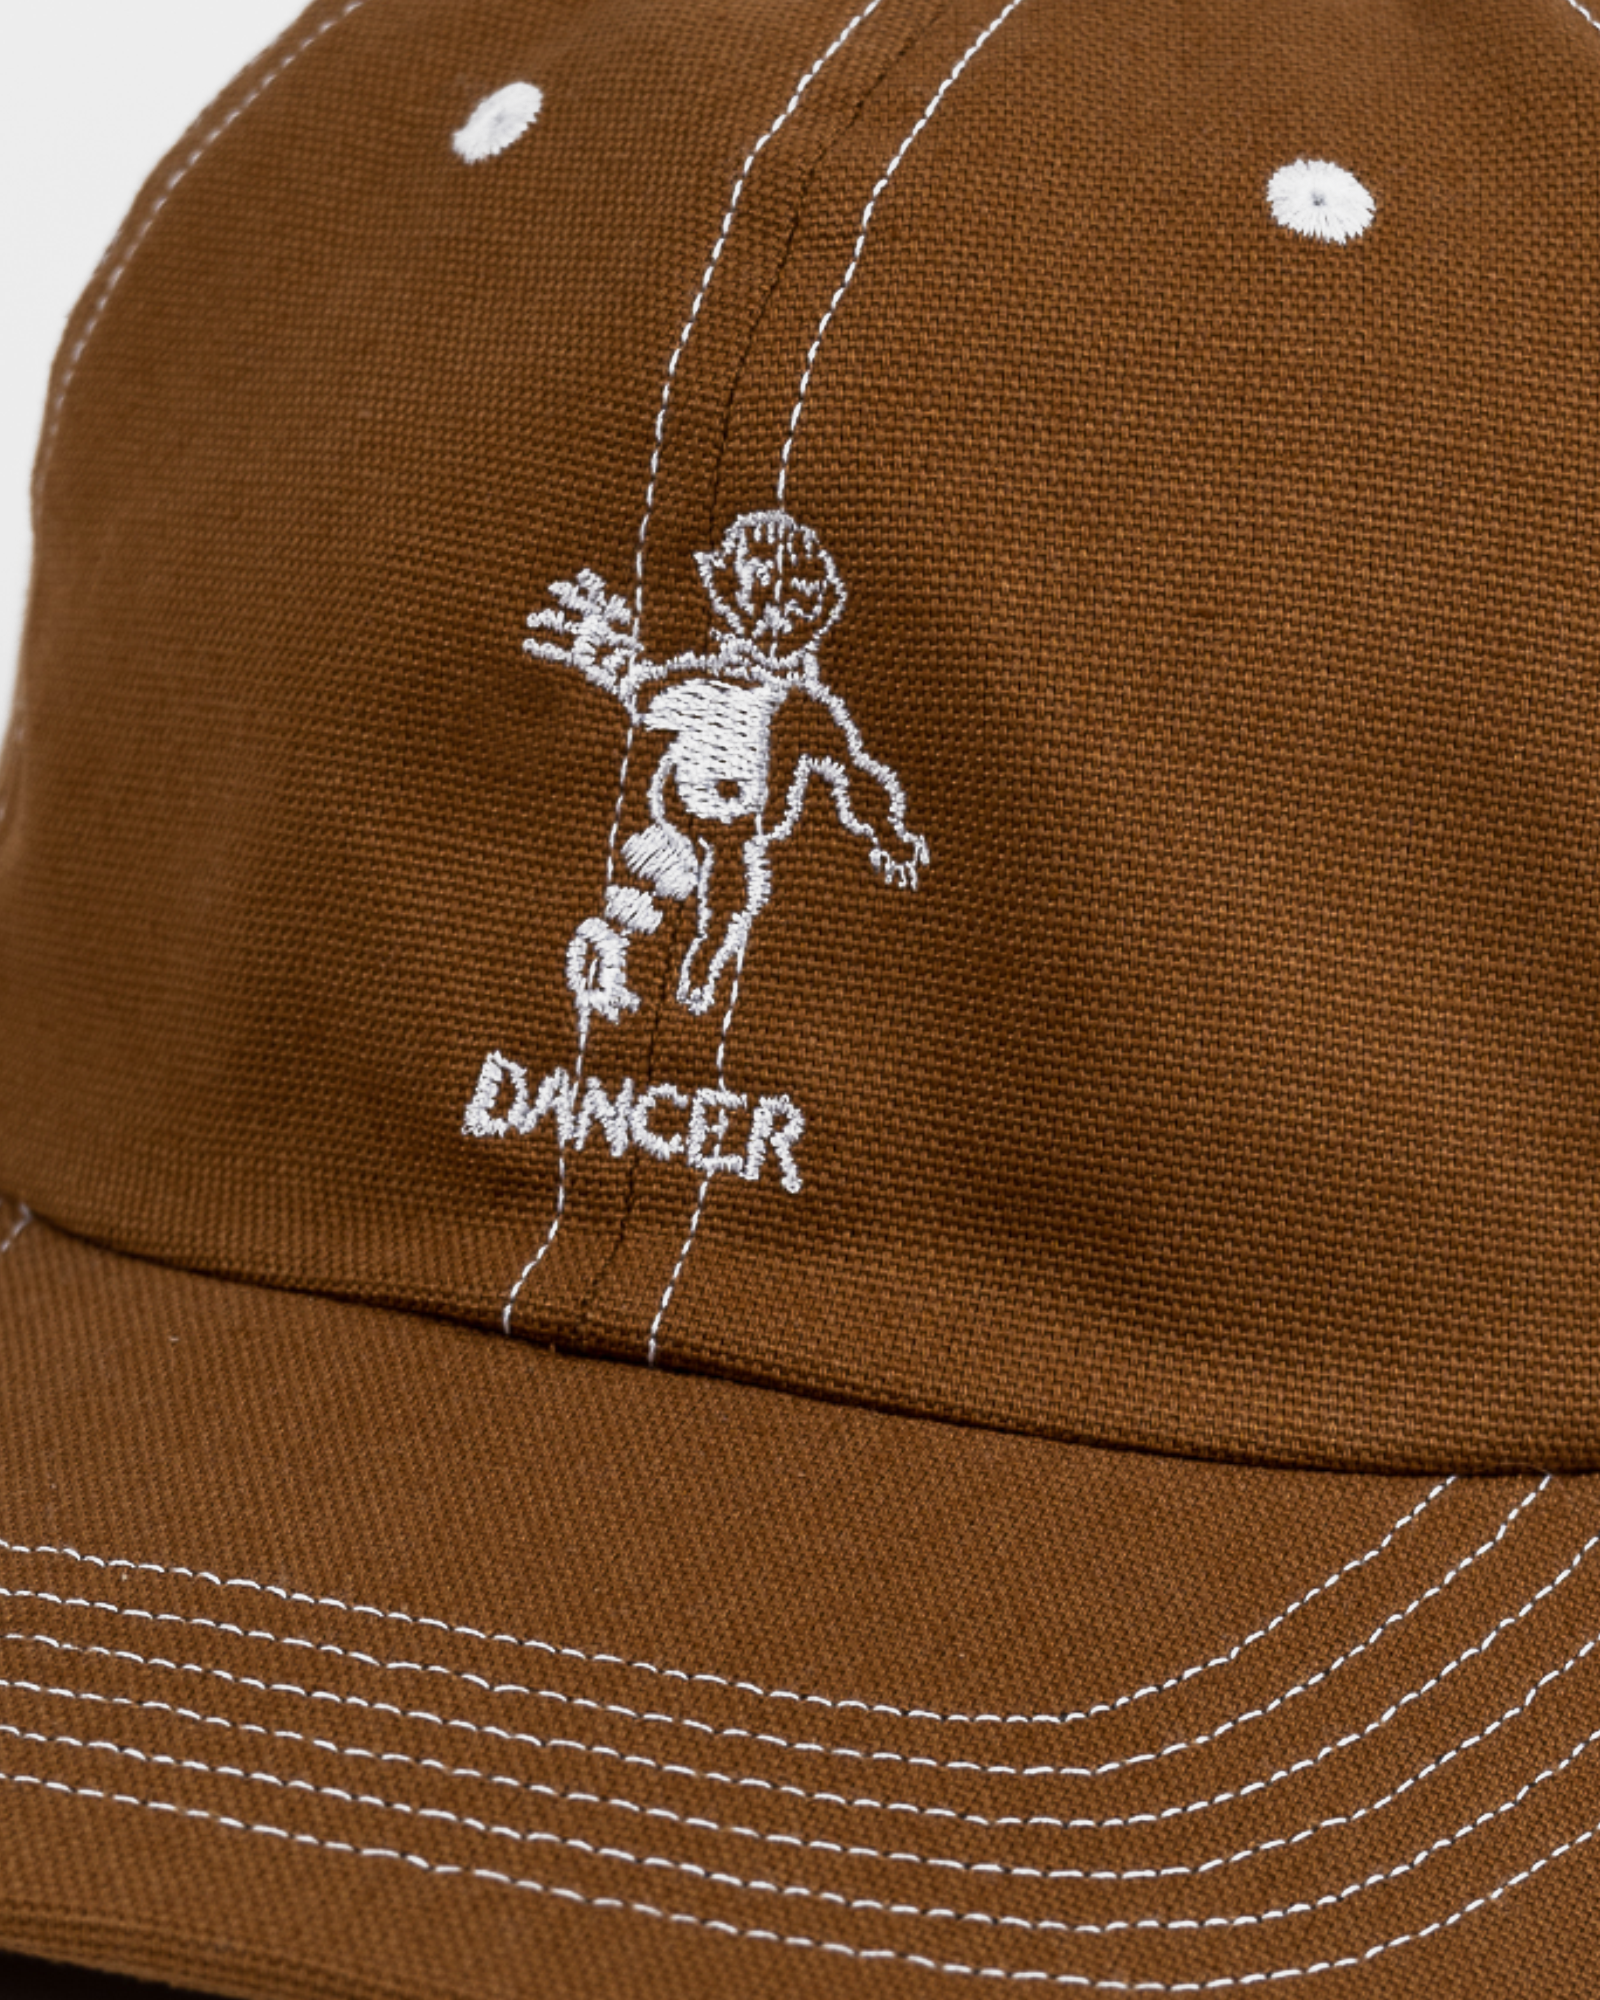 Dancer - Hat - OG Logo - Dad Cap - Camel